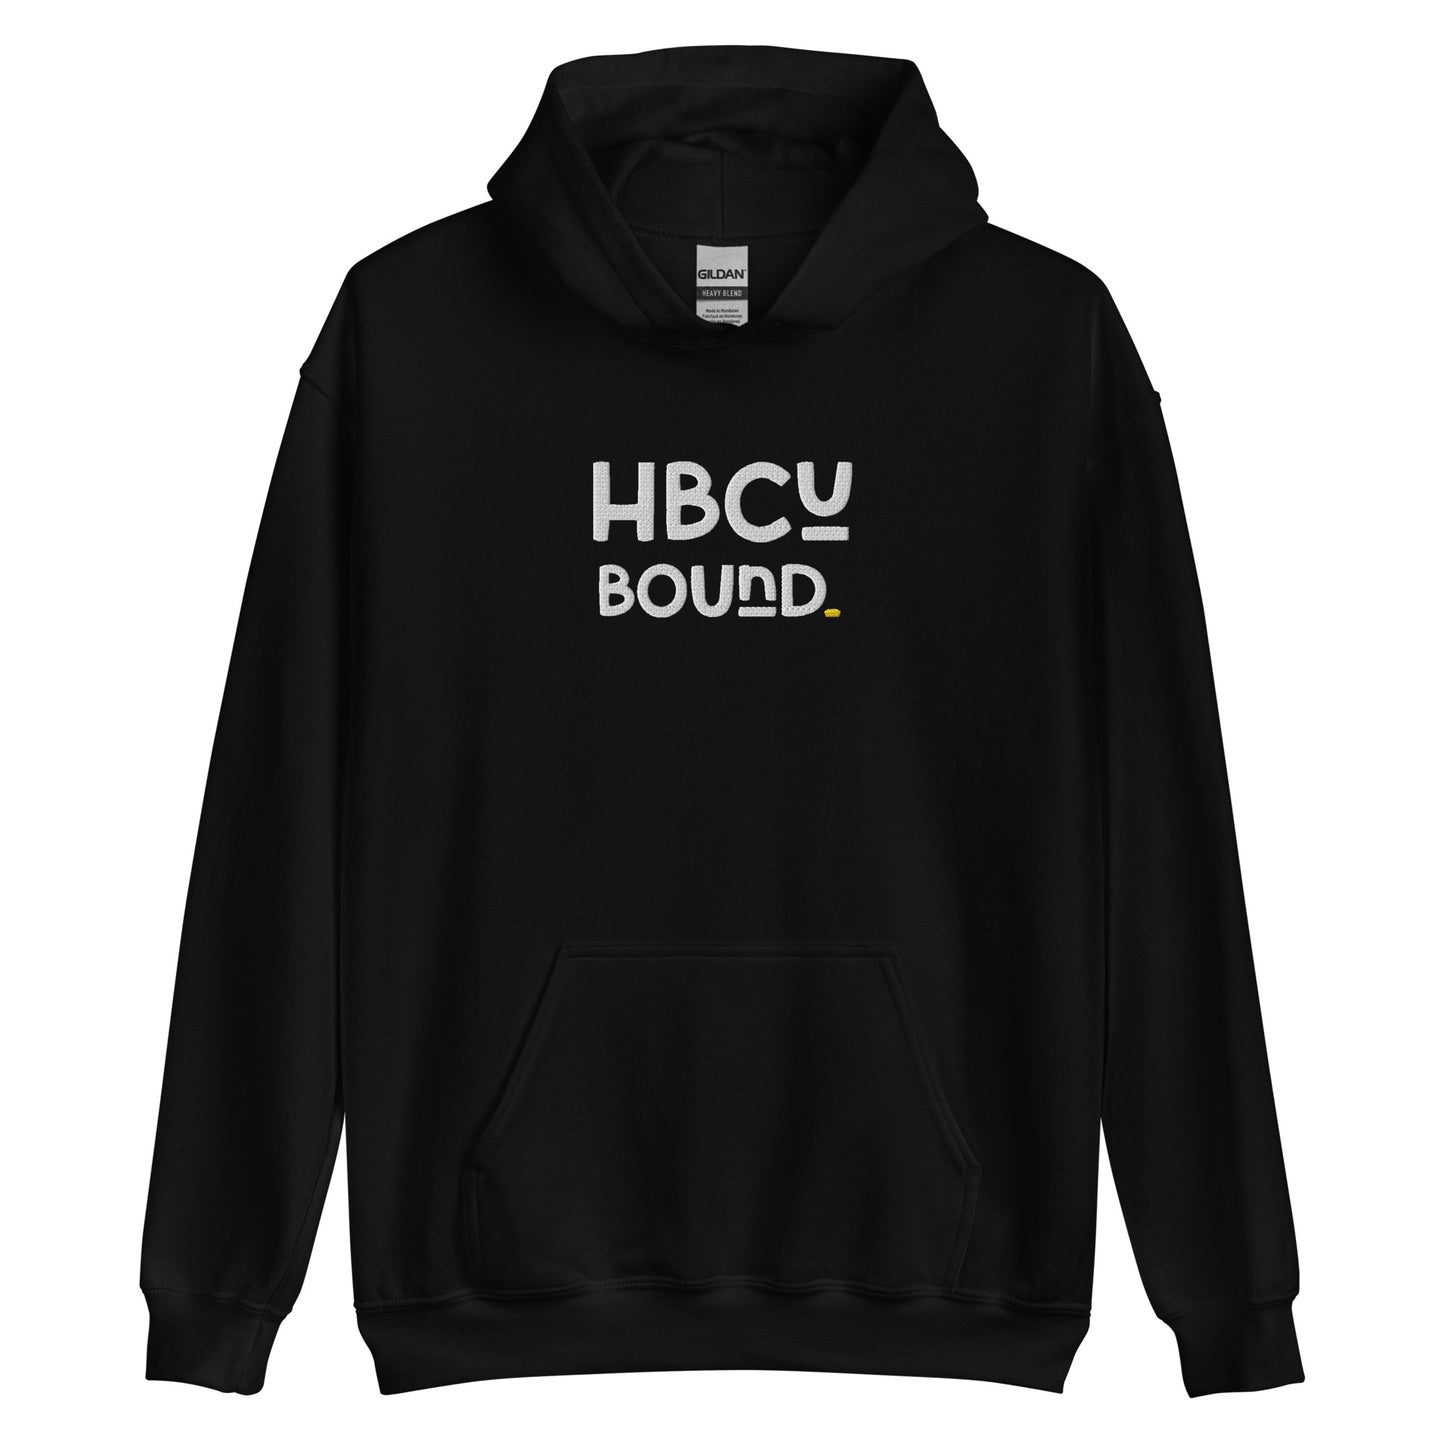 Bound - HBCU Unisex Hoodie